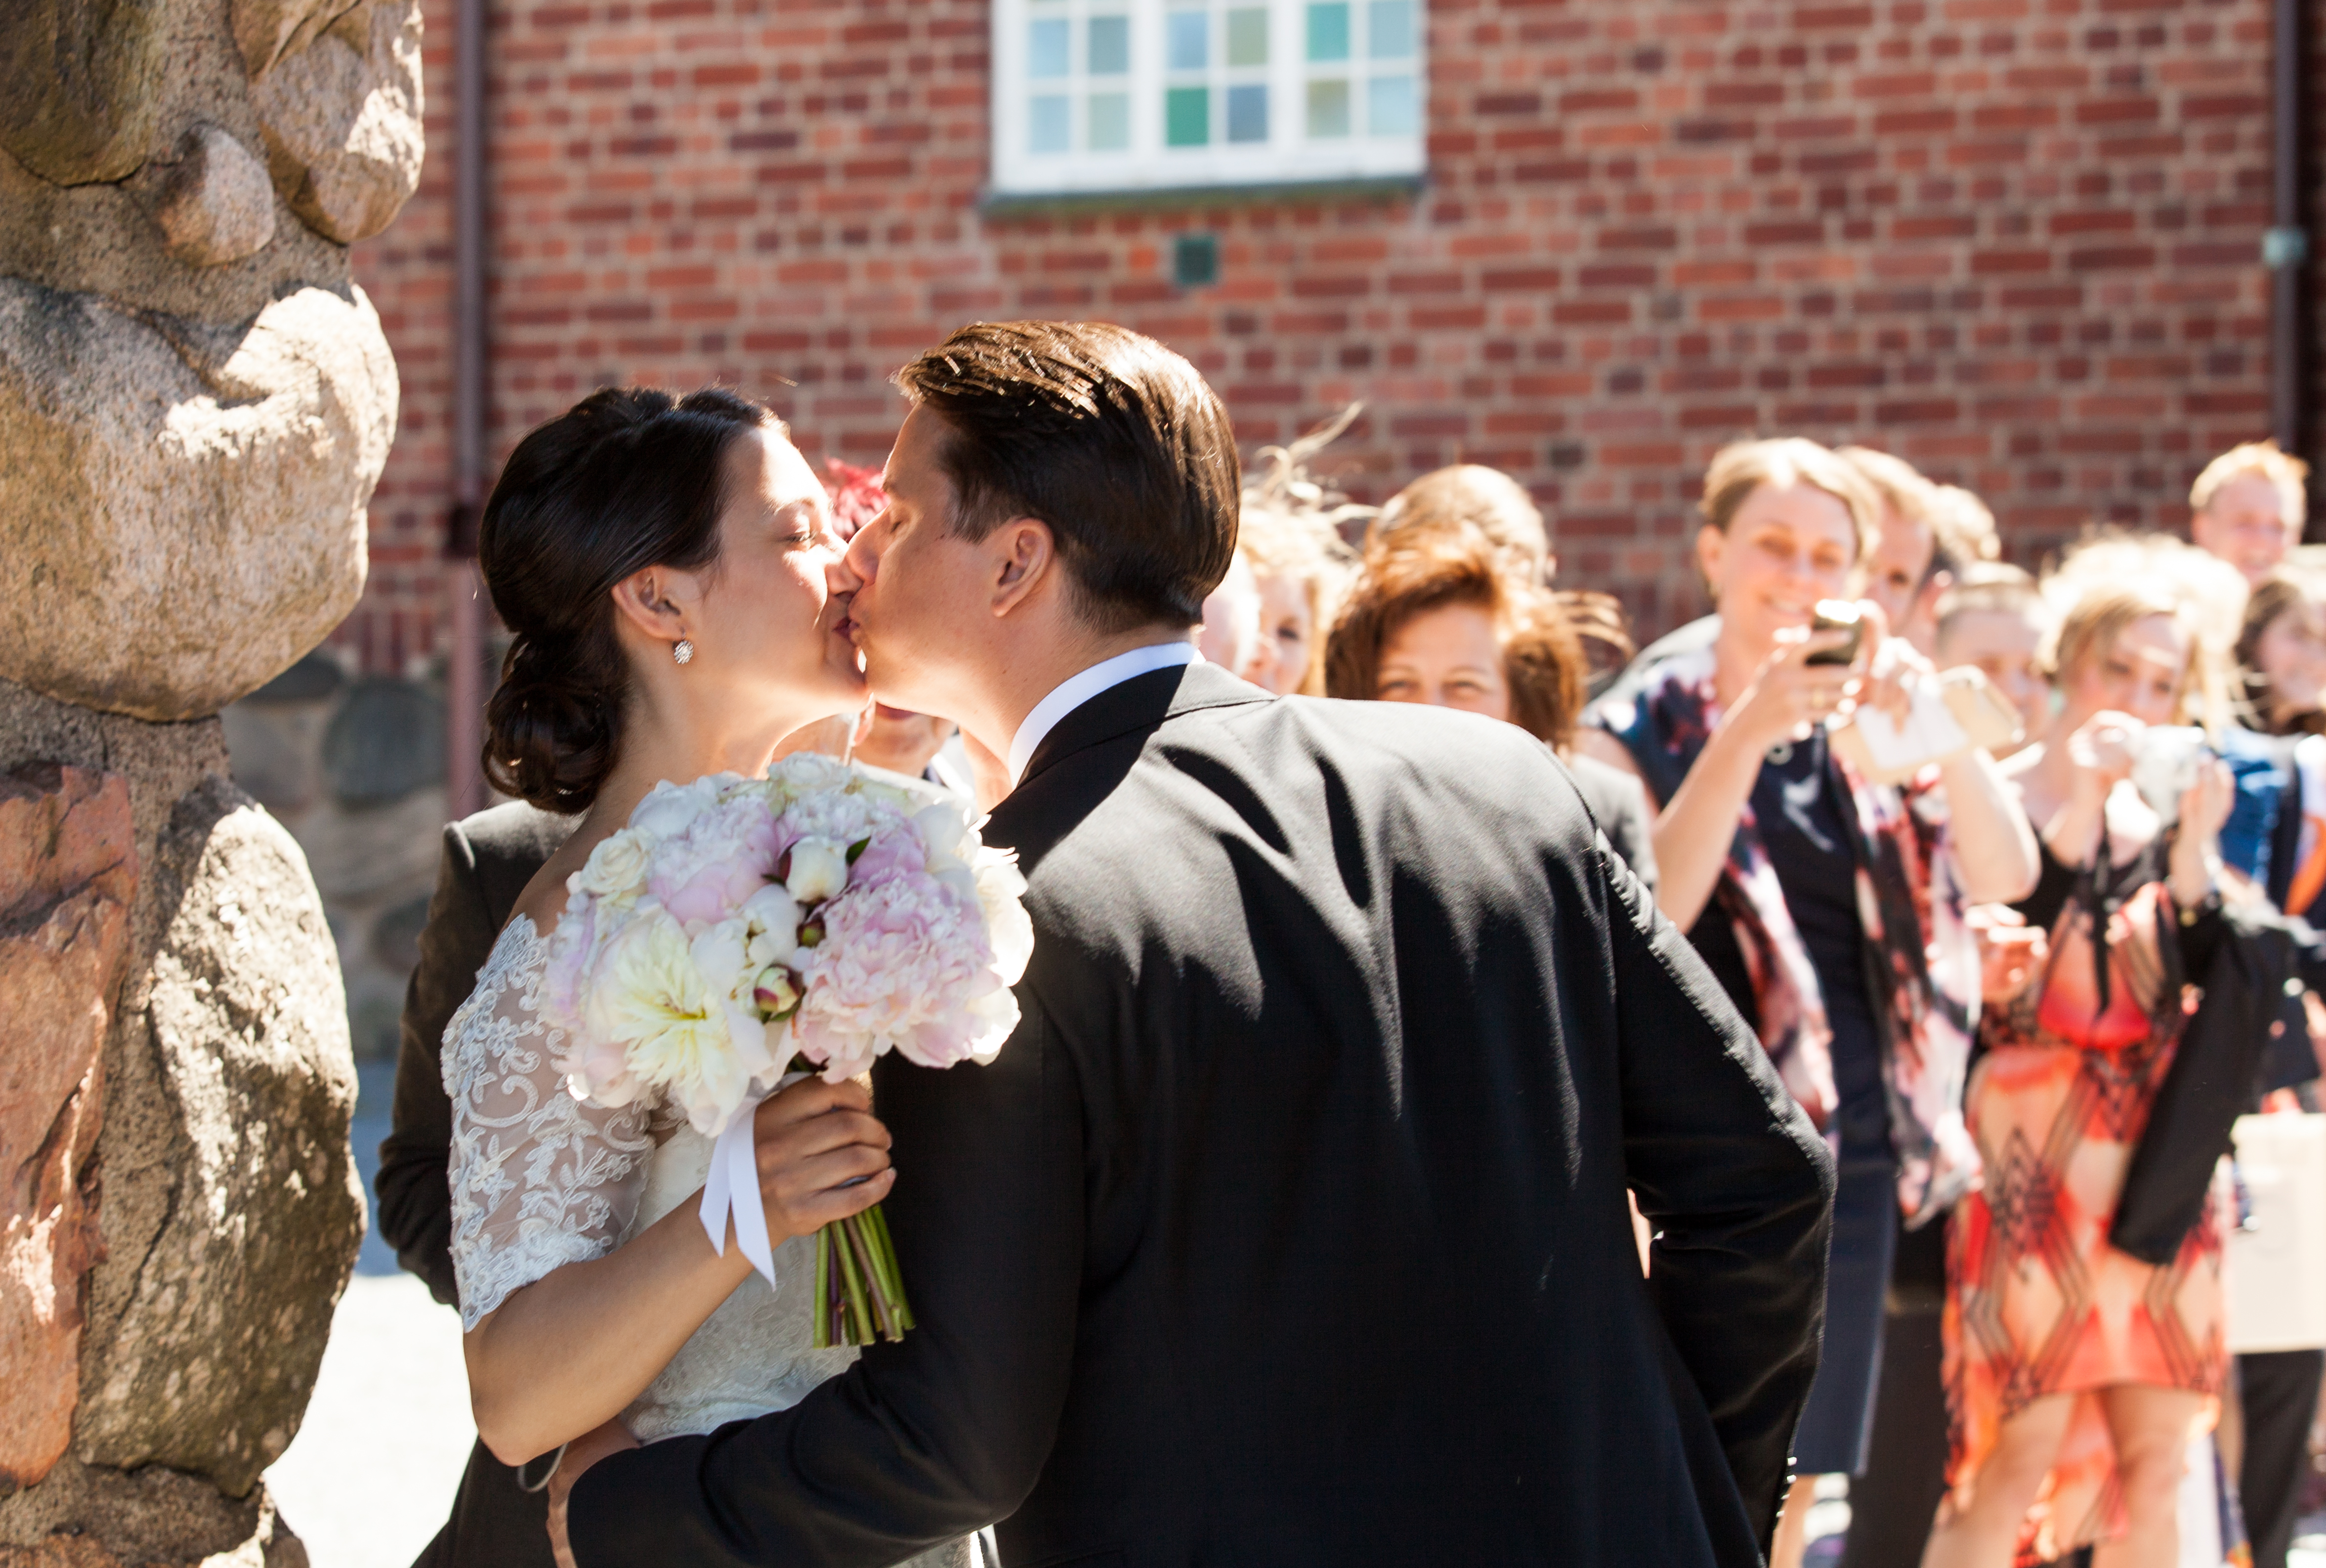 a wedding in Gothenburg, Sweden in June 2014, picture 4/6